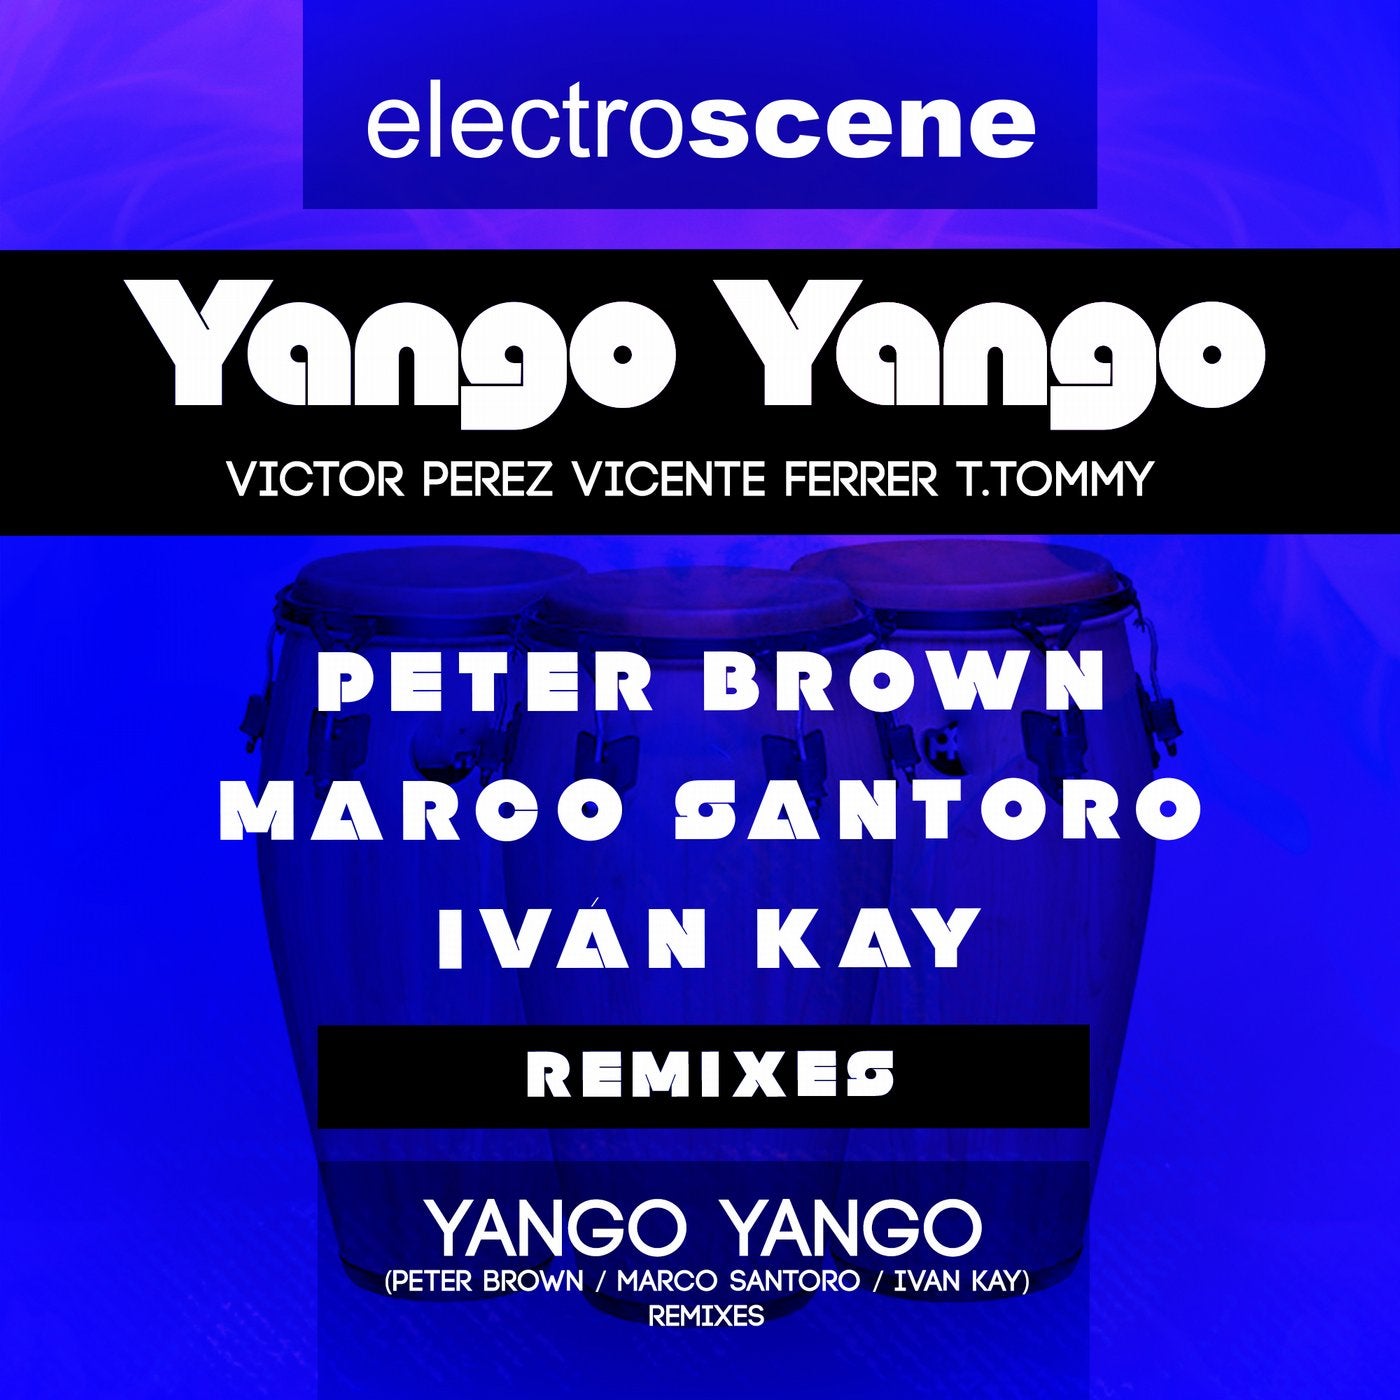 Yango Yango - Remixes